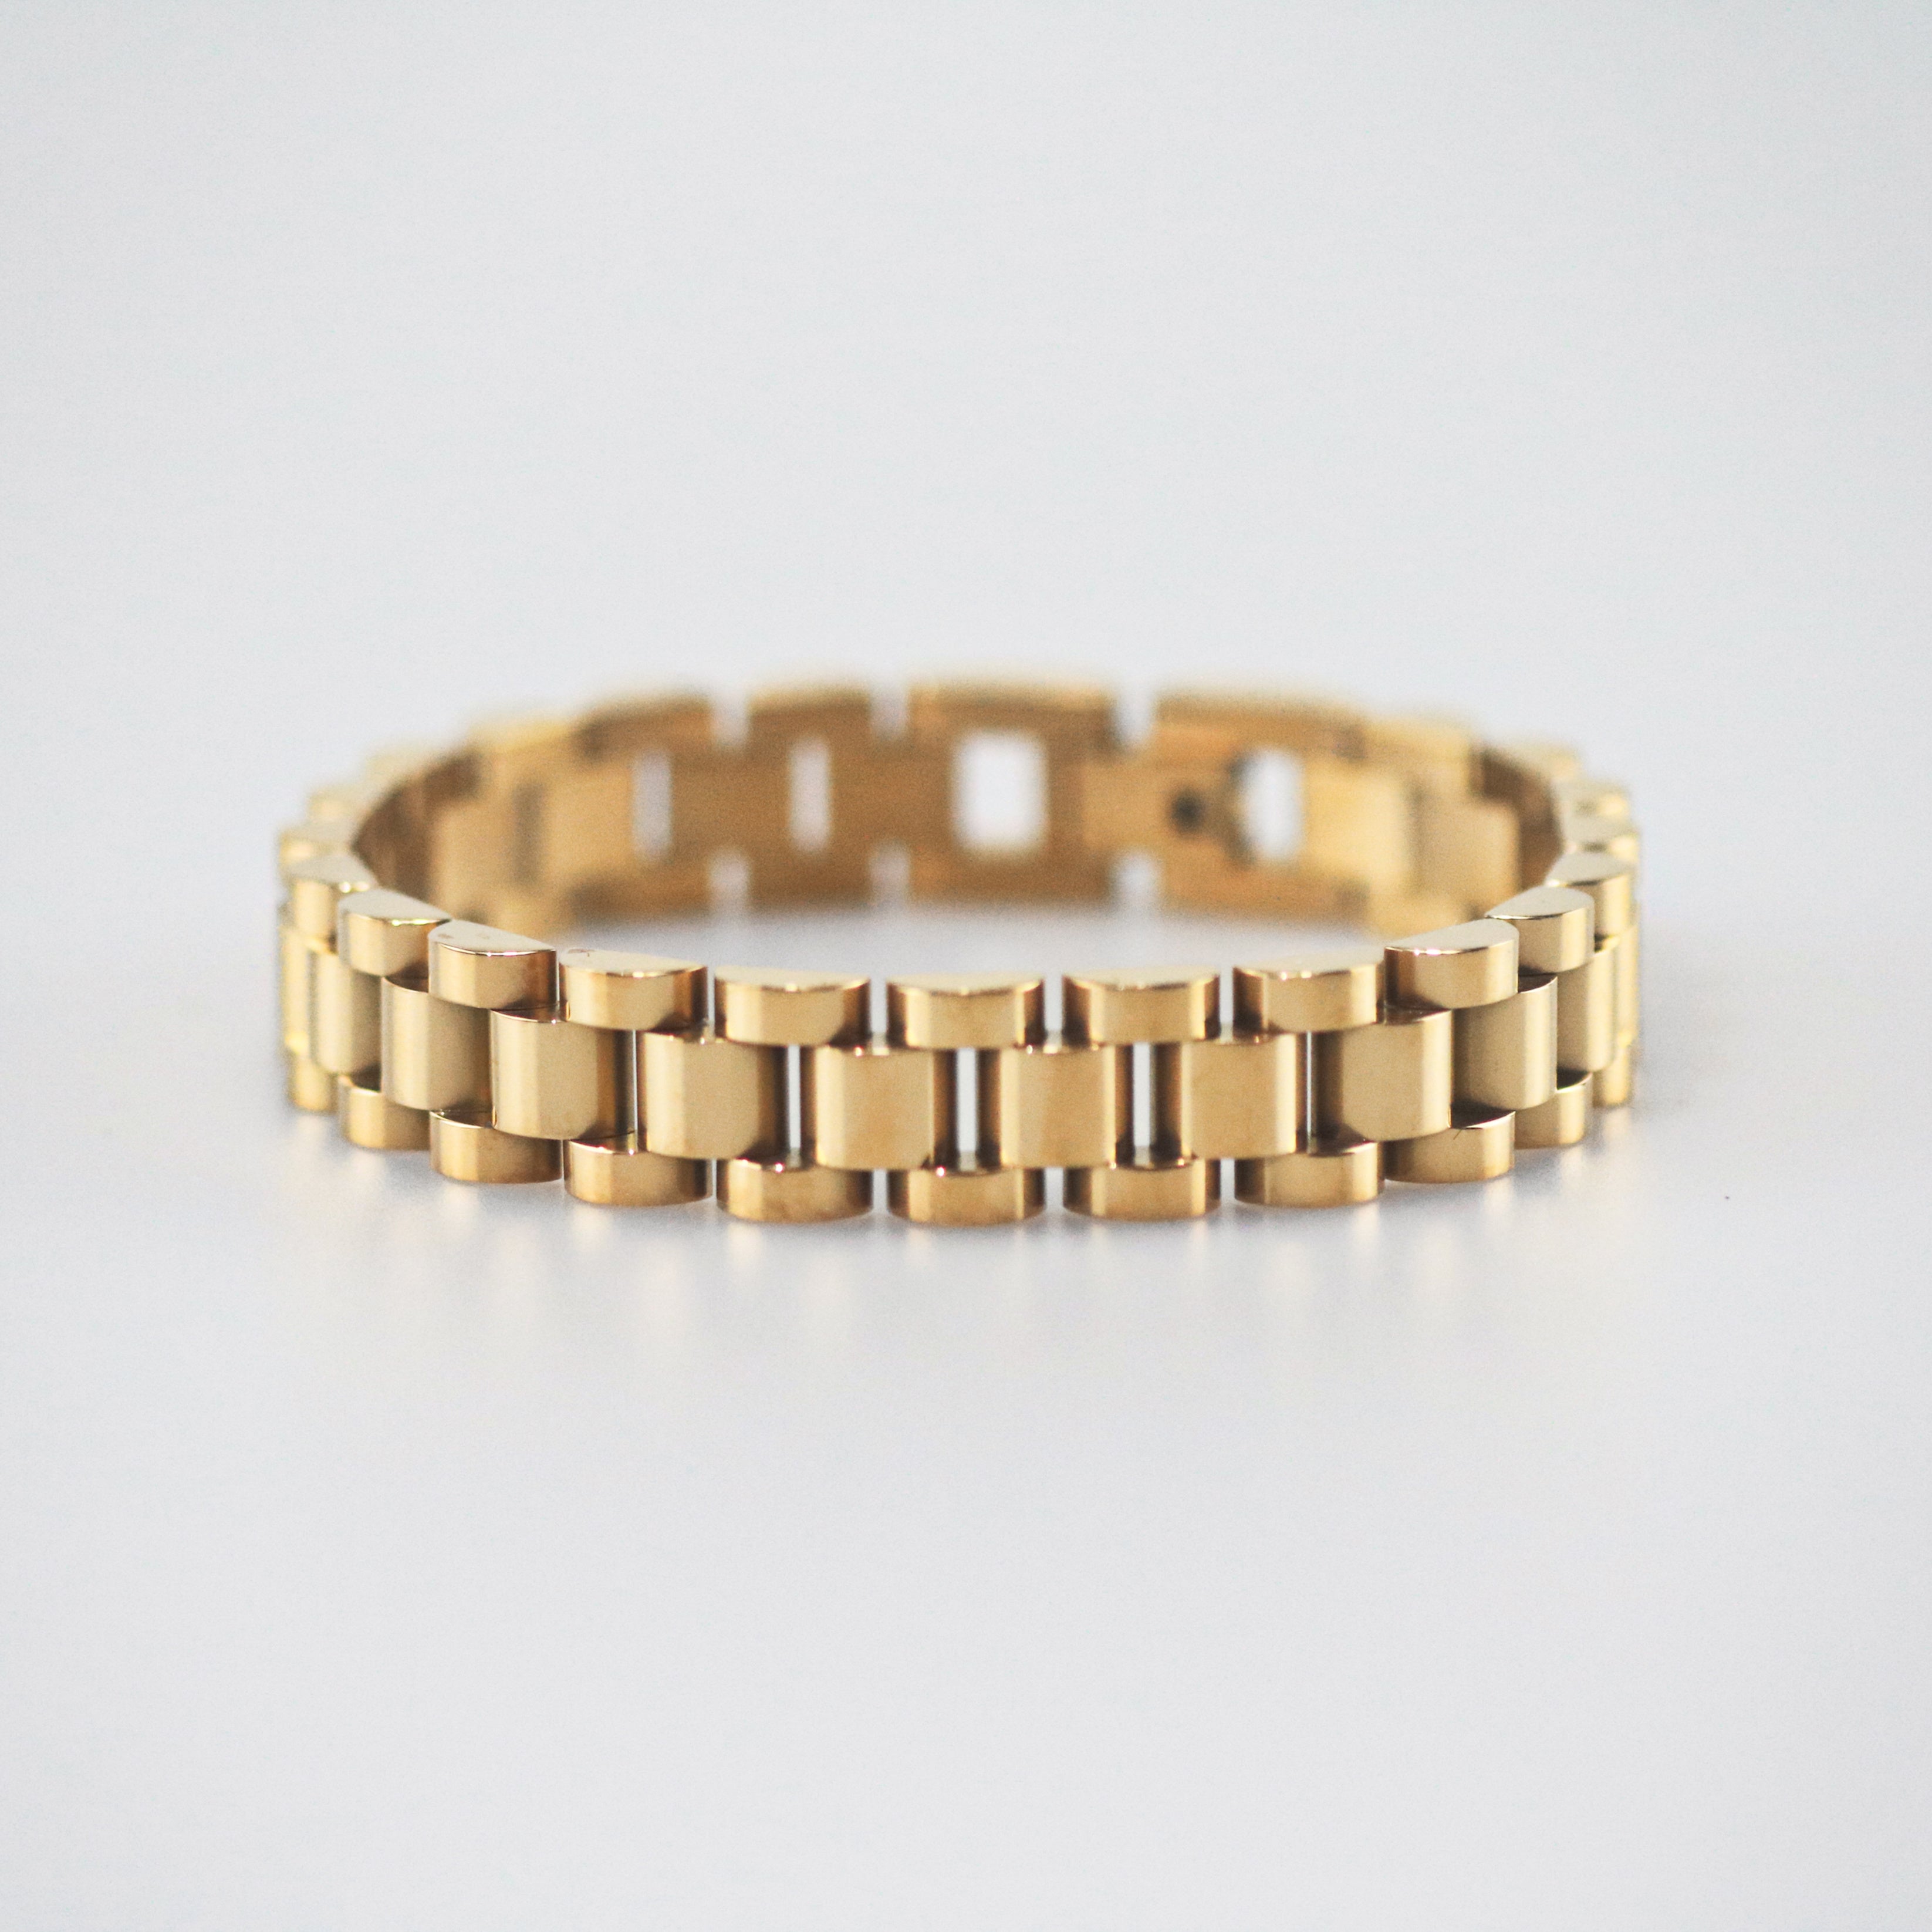 Meideya Jewelry Gold Watch Strap Bracelet